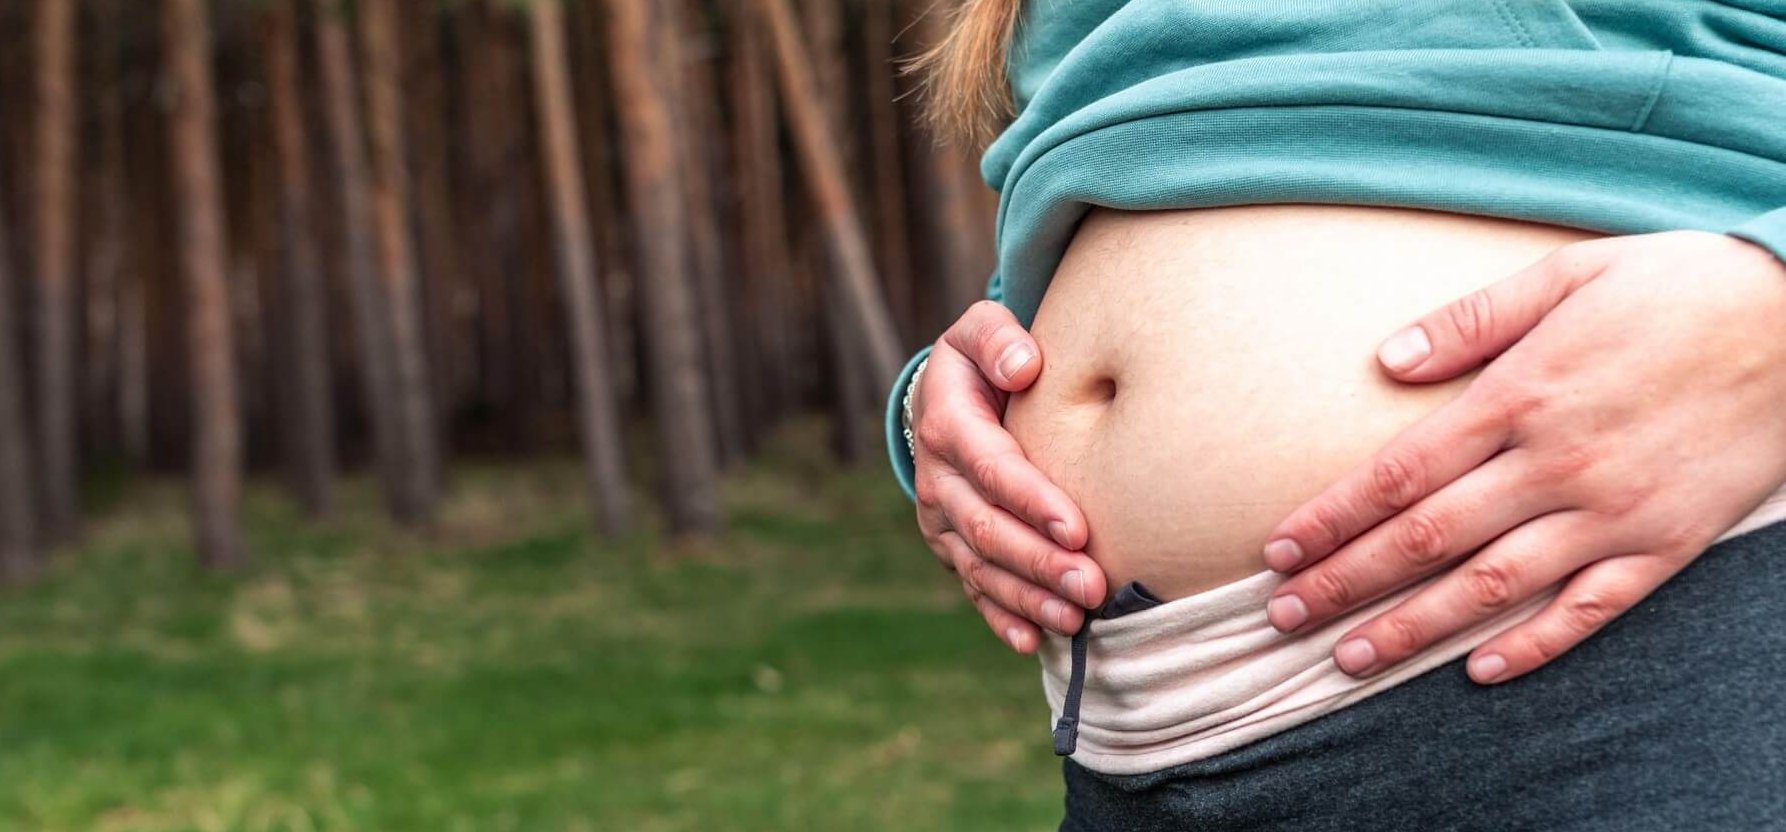 Rács mögé került: terhesfotó buktatta le a négyesikreket váró nőt